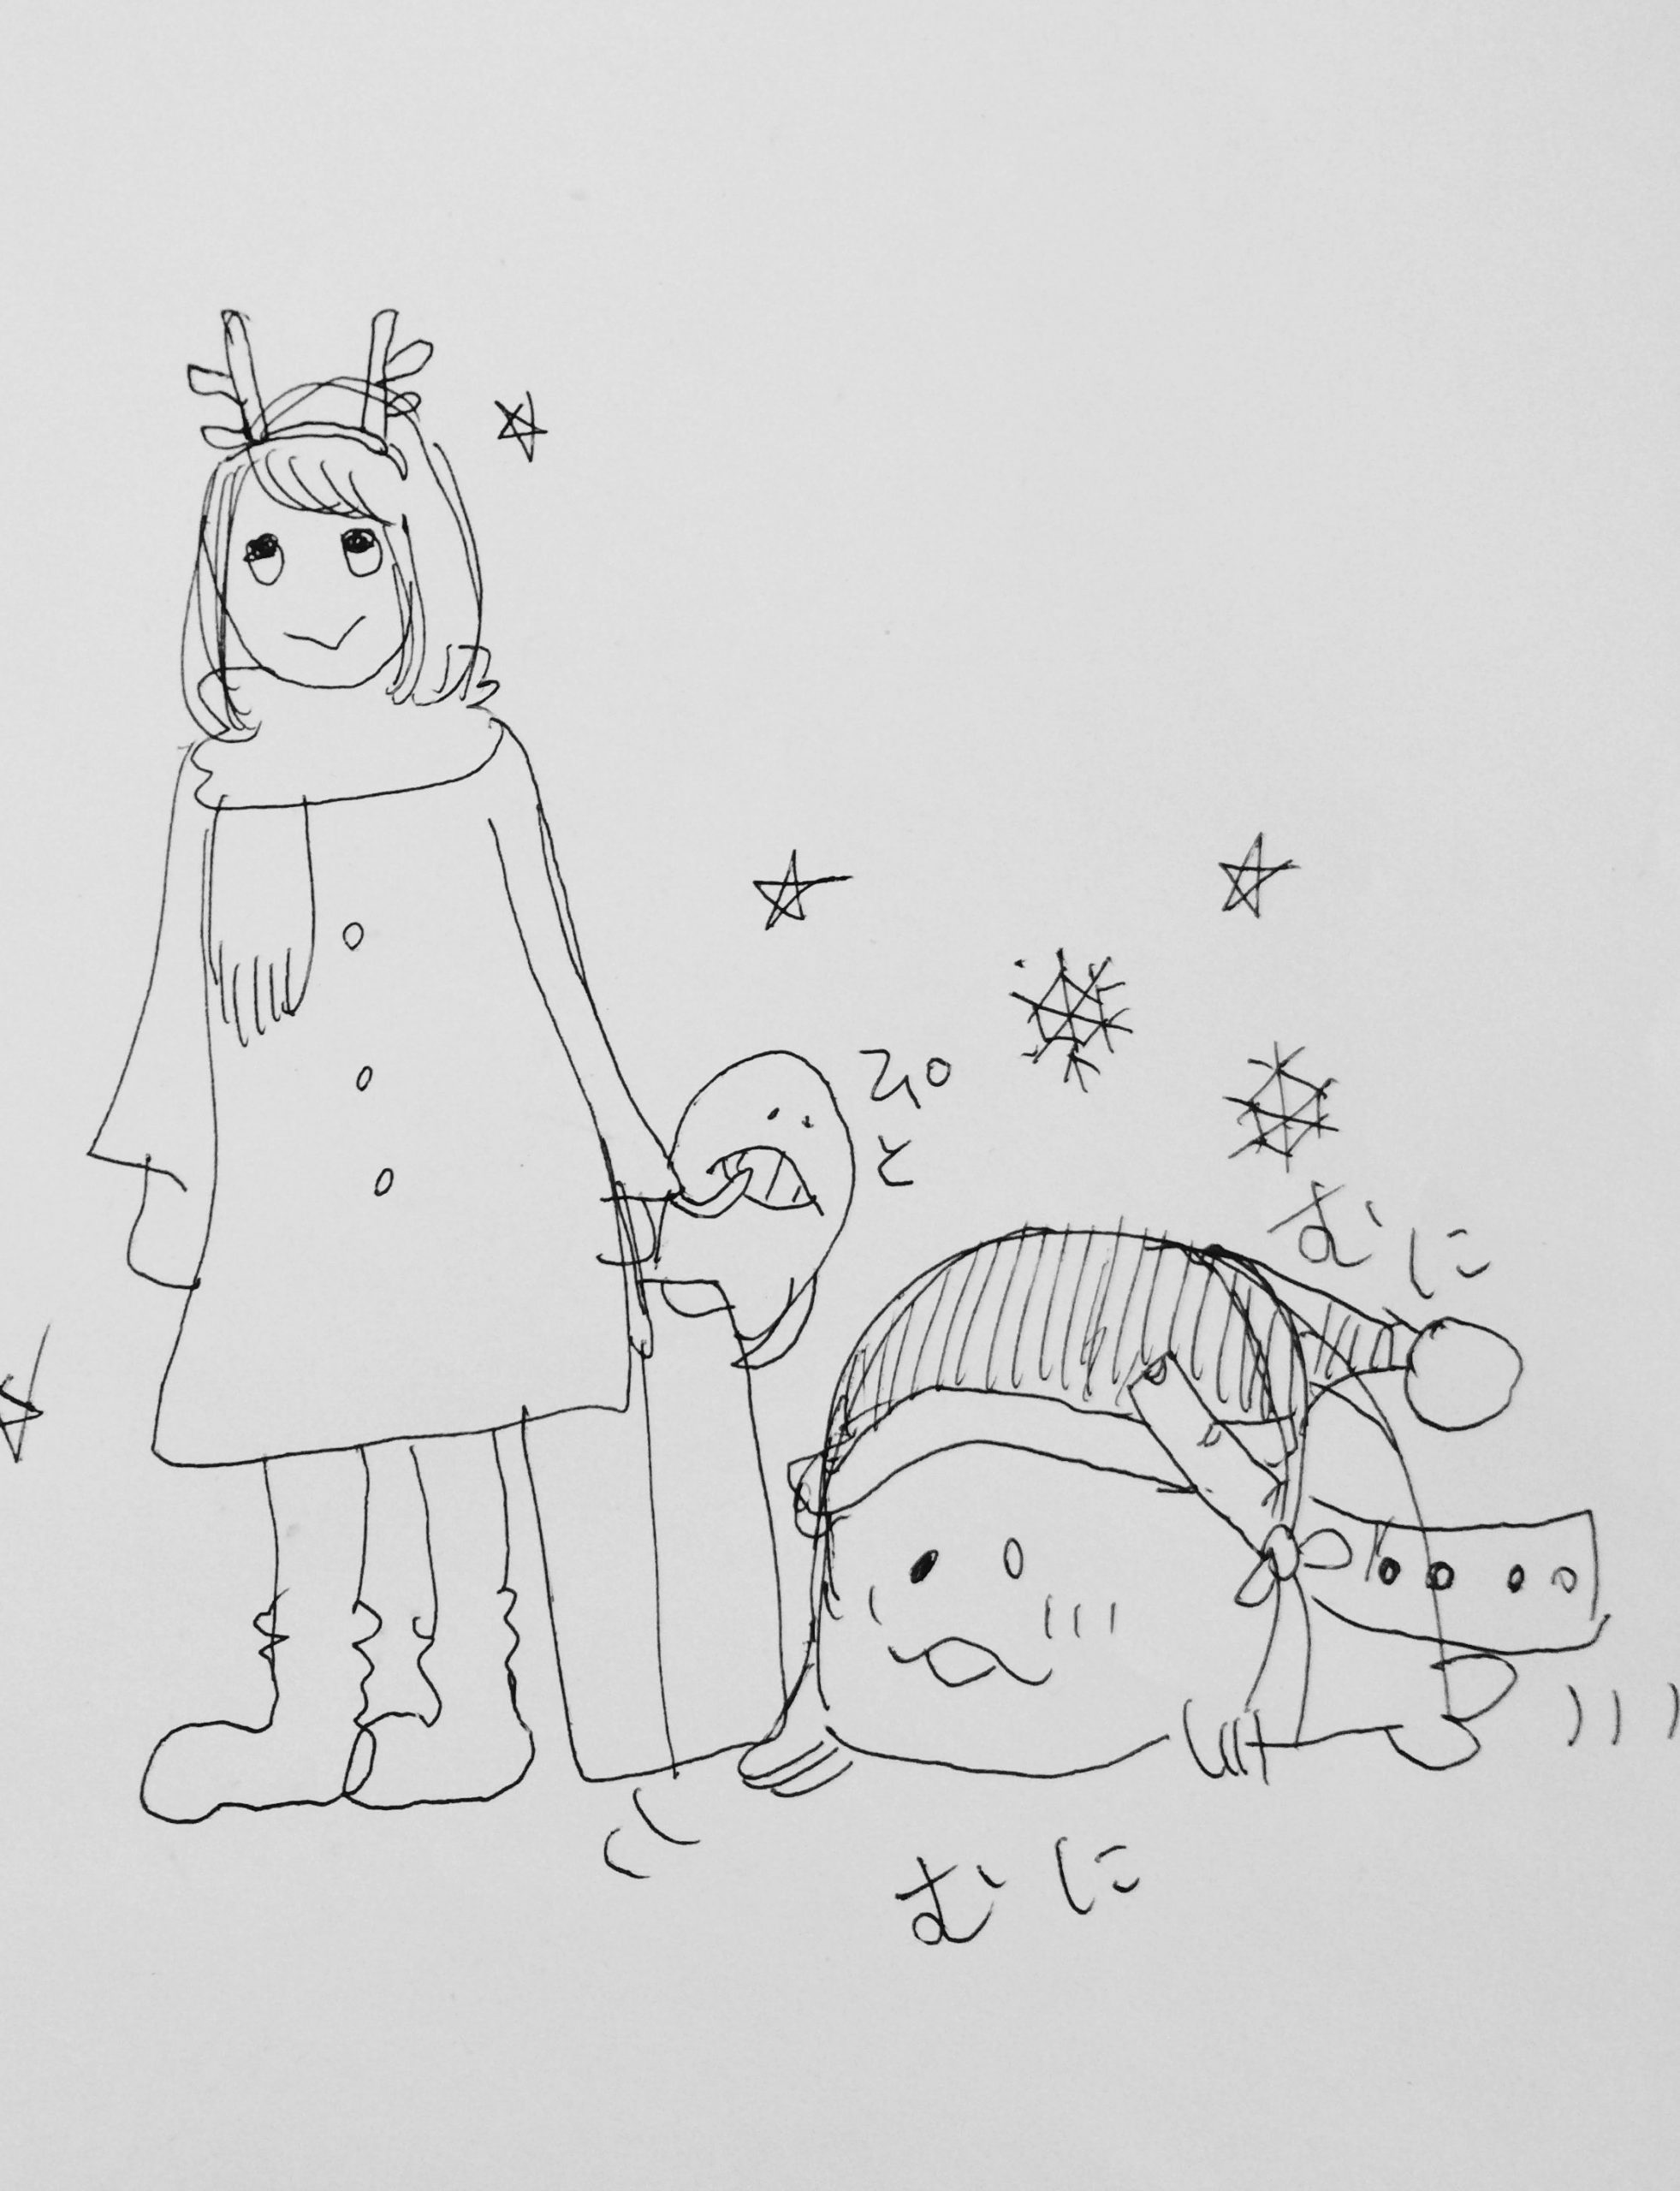 クリスマスの京都へ京大西部講堂舞踏公演を観に：前編/高橋巖先生の講演会へ「カタチとイノチ」